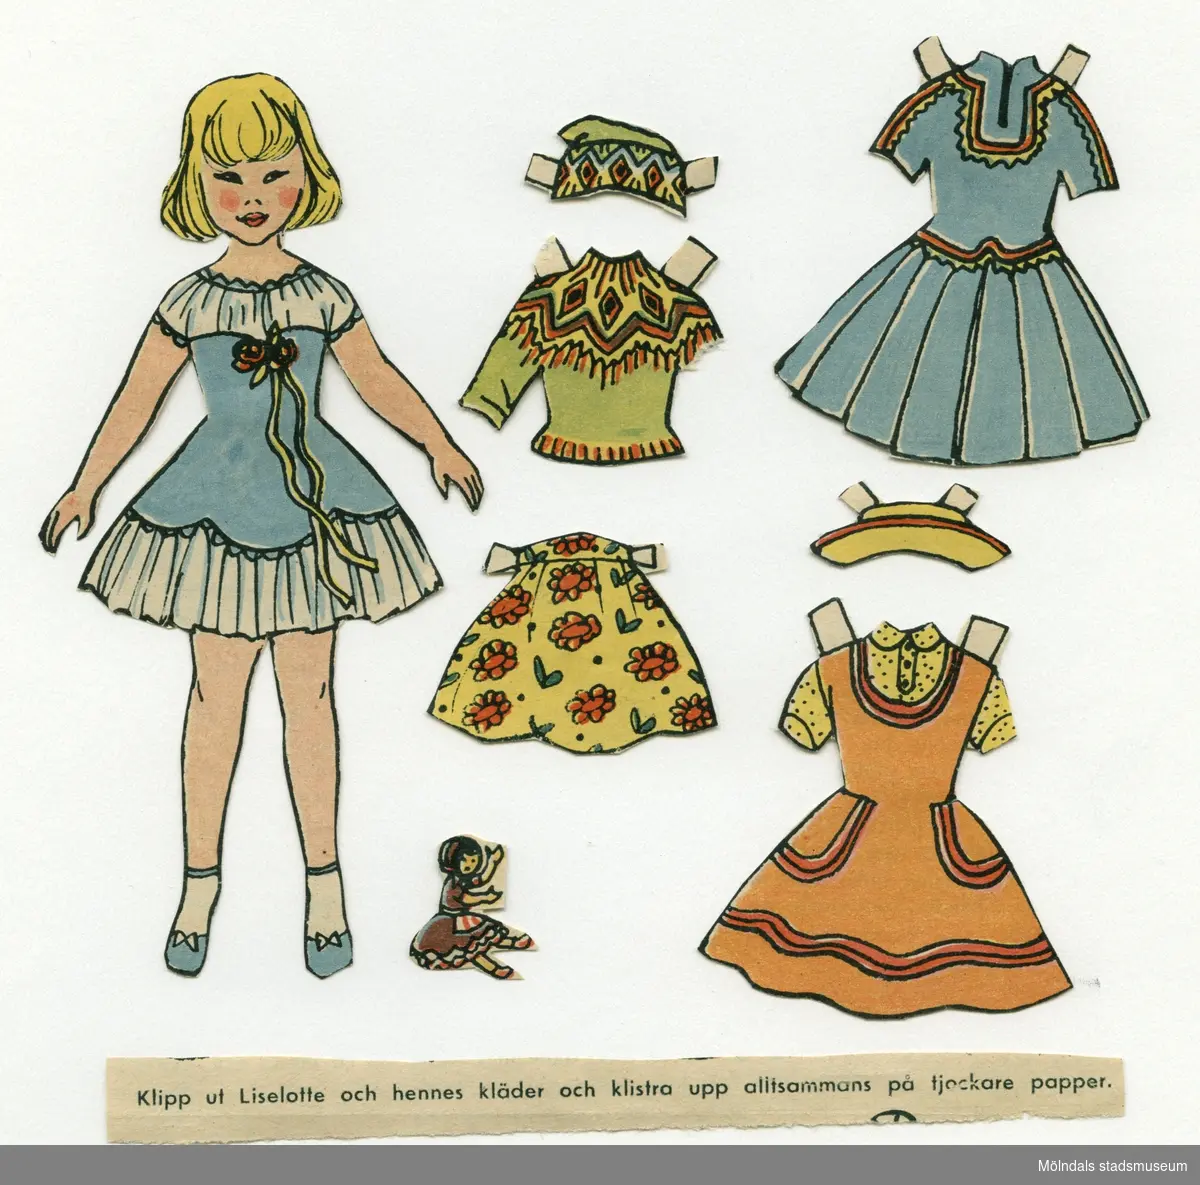 Pappersdocka med kläder och tillbehör, urklippta ur tidning på 1950-talet. Dockan föreställer flicka med blont hår, iklädd blå och vit klänning, strumpor och skor. Garderoben består av en klänning, en sameklänning, kjol, hatt,  samt tröja med matchande mössa.Som tillbehör har pappersdockan en egen docka. I materialet finns också ett urklipp med texten: "Klipp ut Liselotte och hennes kläder och klistra upp alltsammans på tjockare papper".Dockan förvaras i ett litet kuvert med tryckt text: "Lycko-brev".